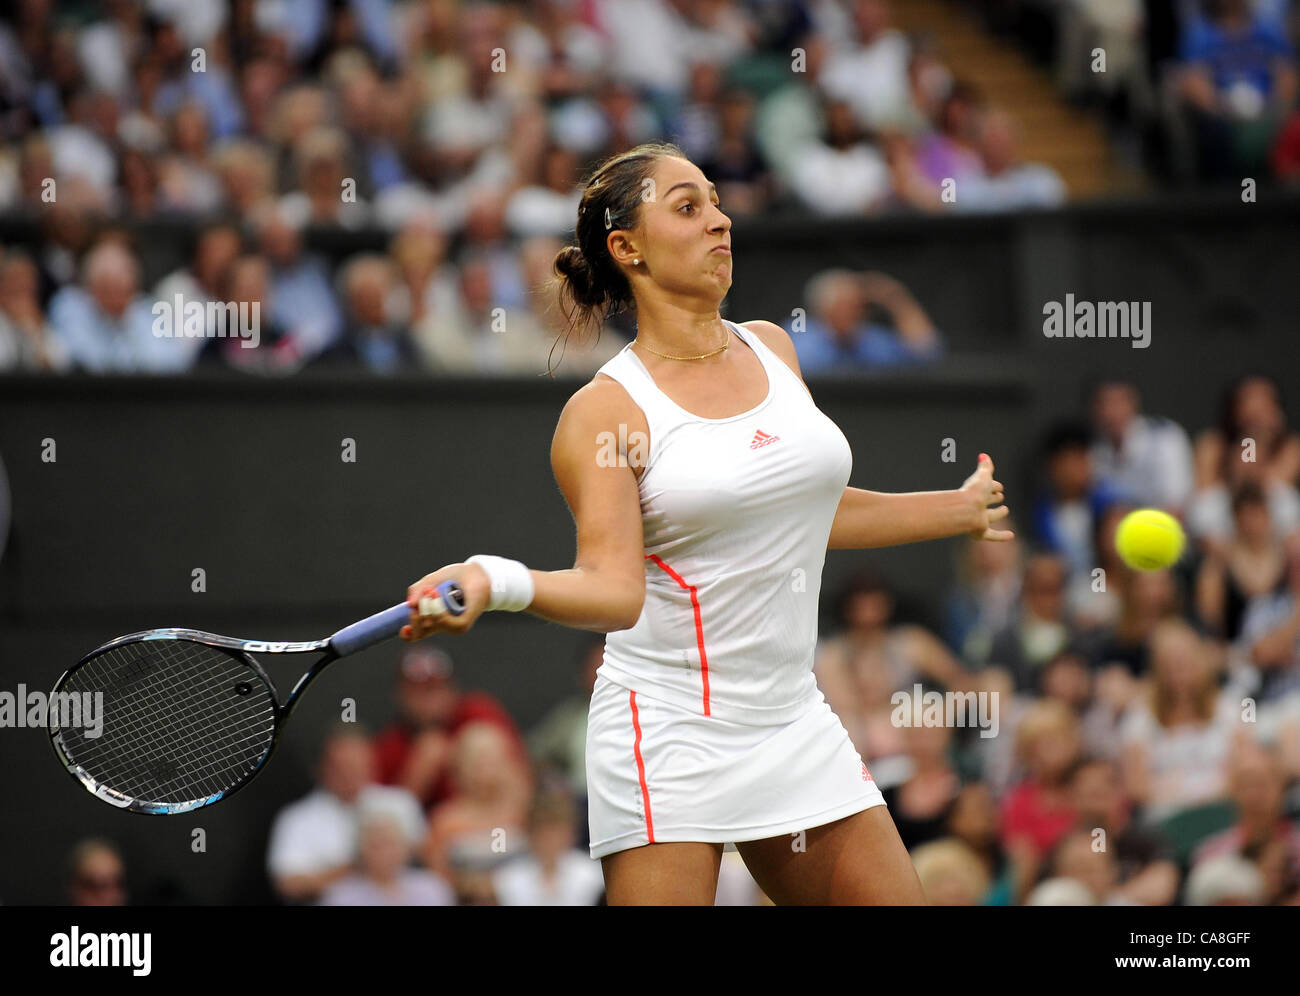 Tamira paszek tennis hi-res stock photography and images - Alamy